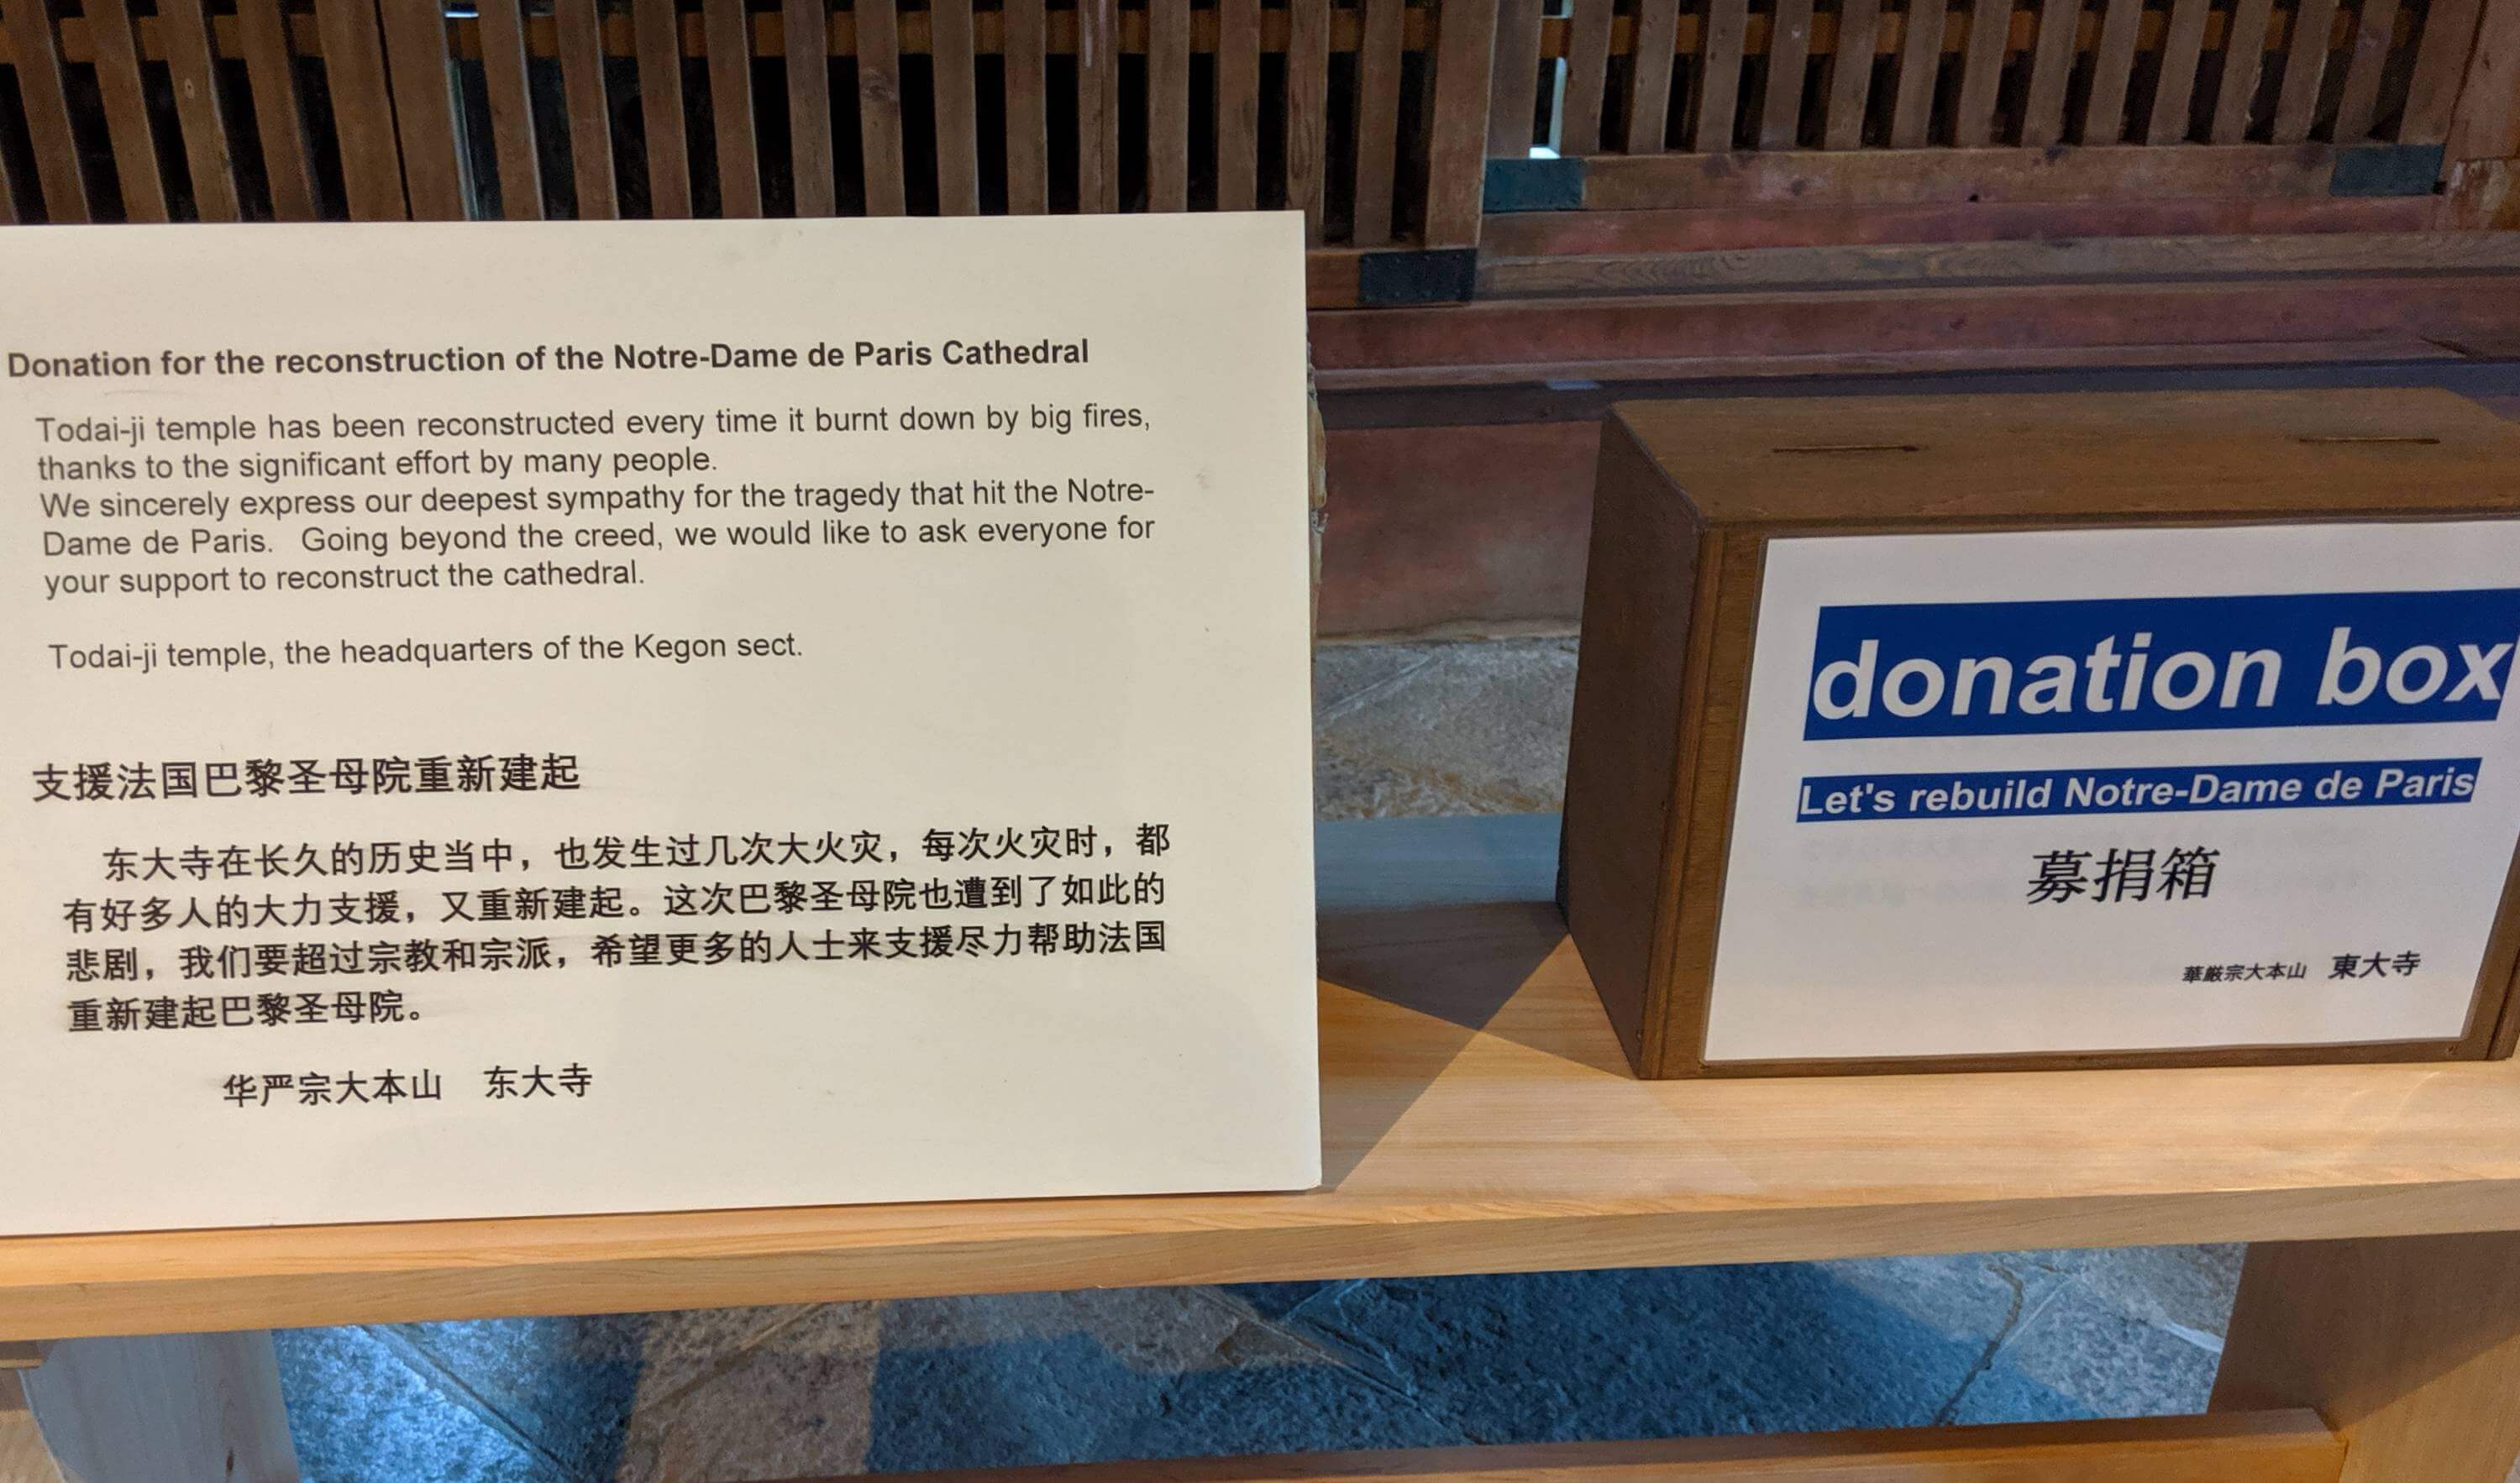 Donation box for Notre Dame at Todai-ji in Nara, Japan